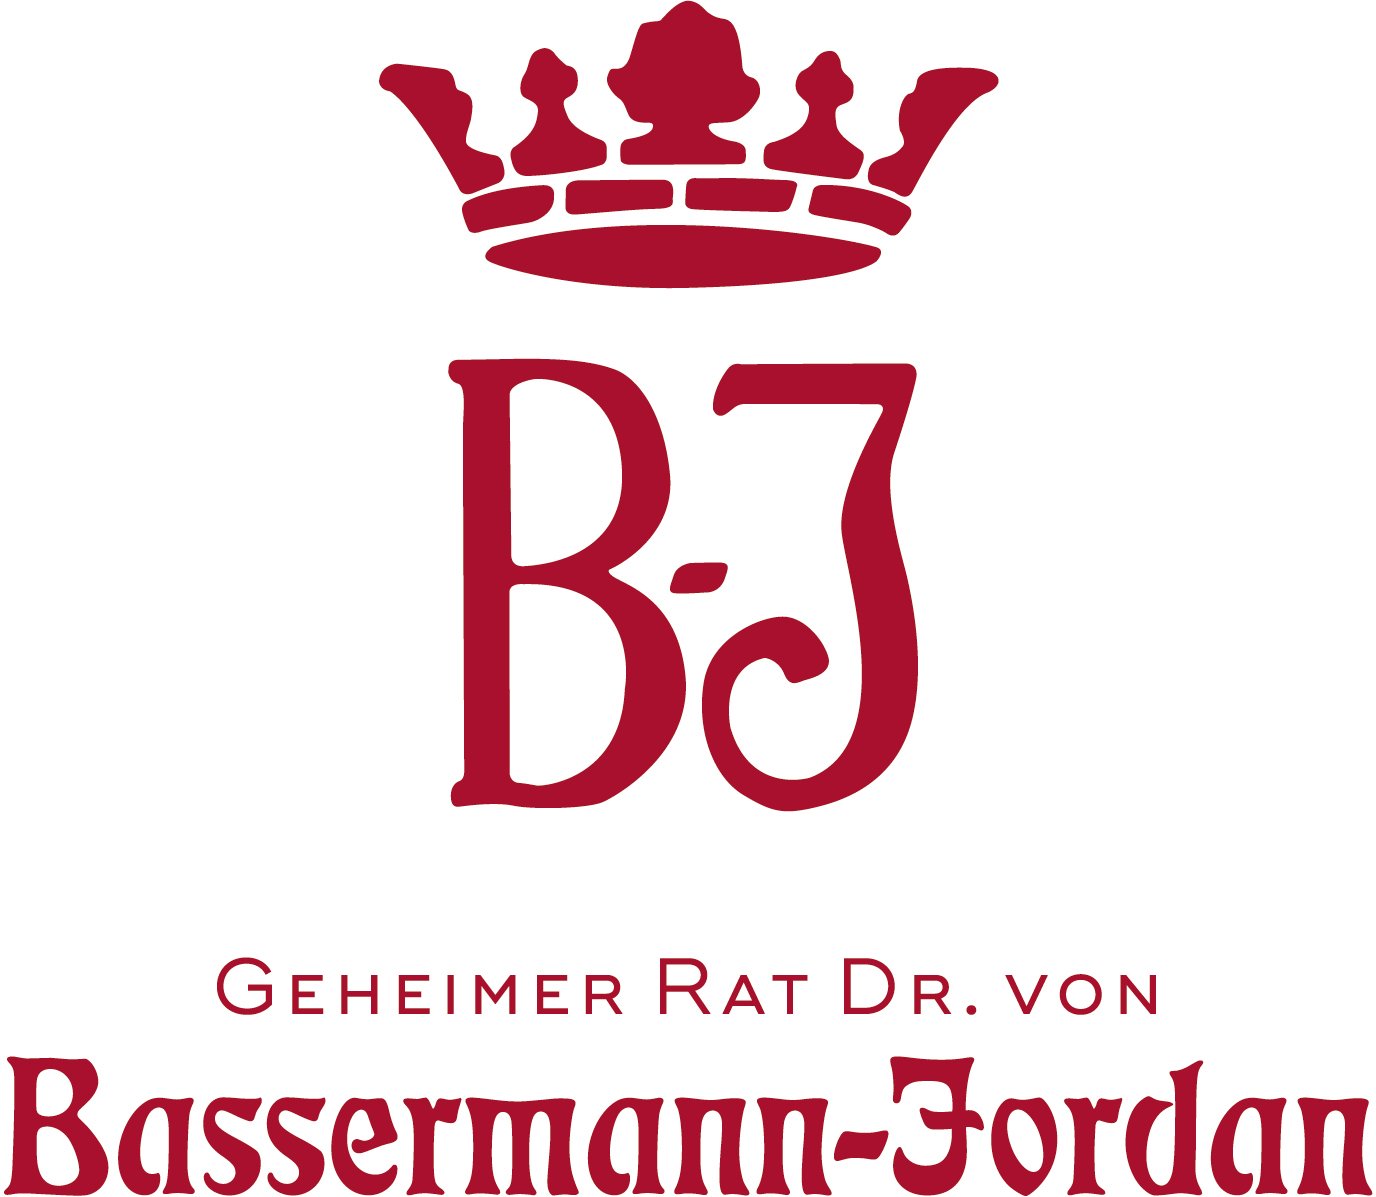 BASSERMANN-JORDAN VDP, Deidesheim